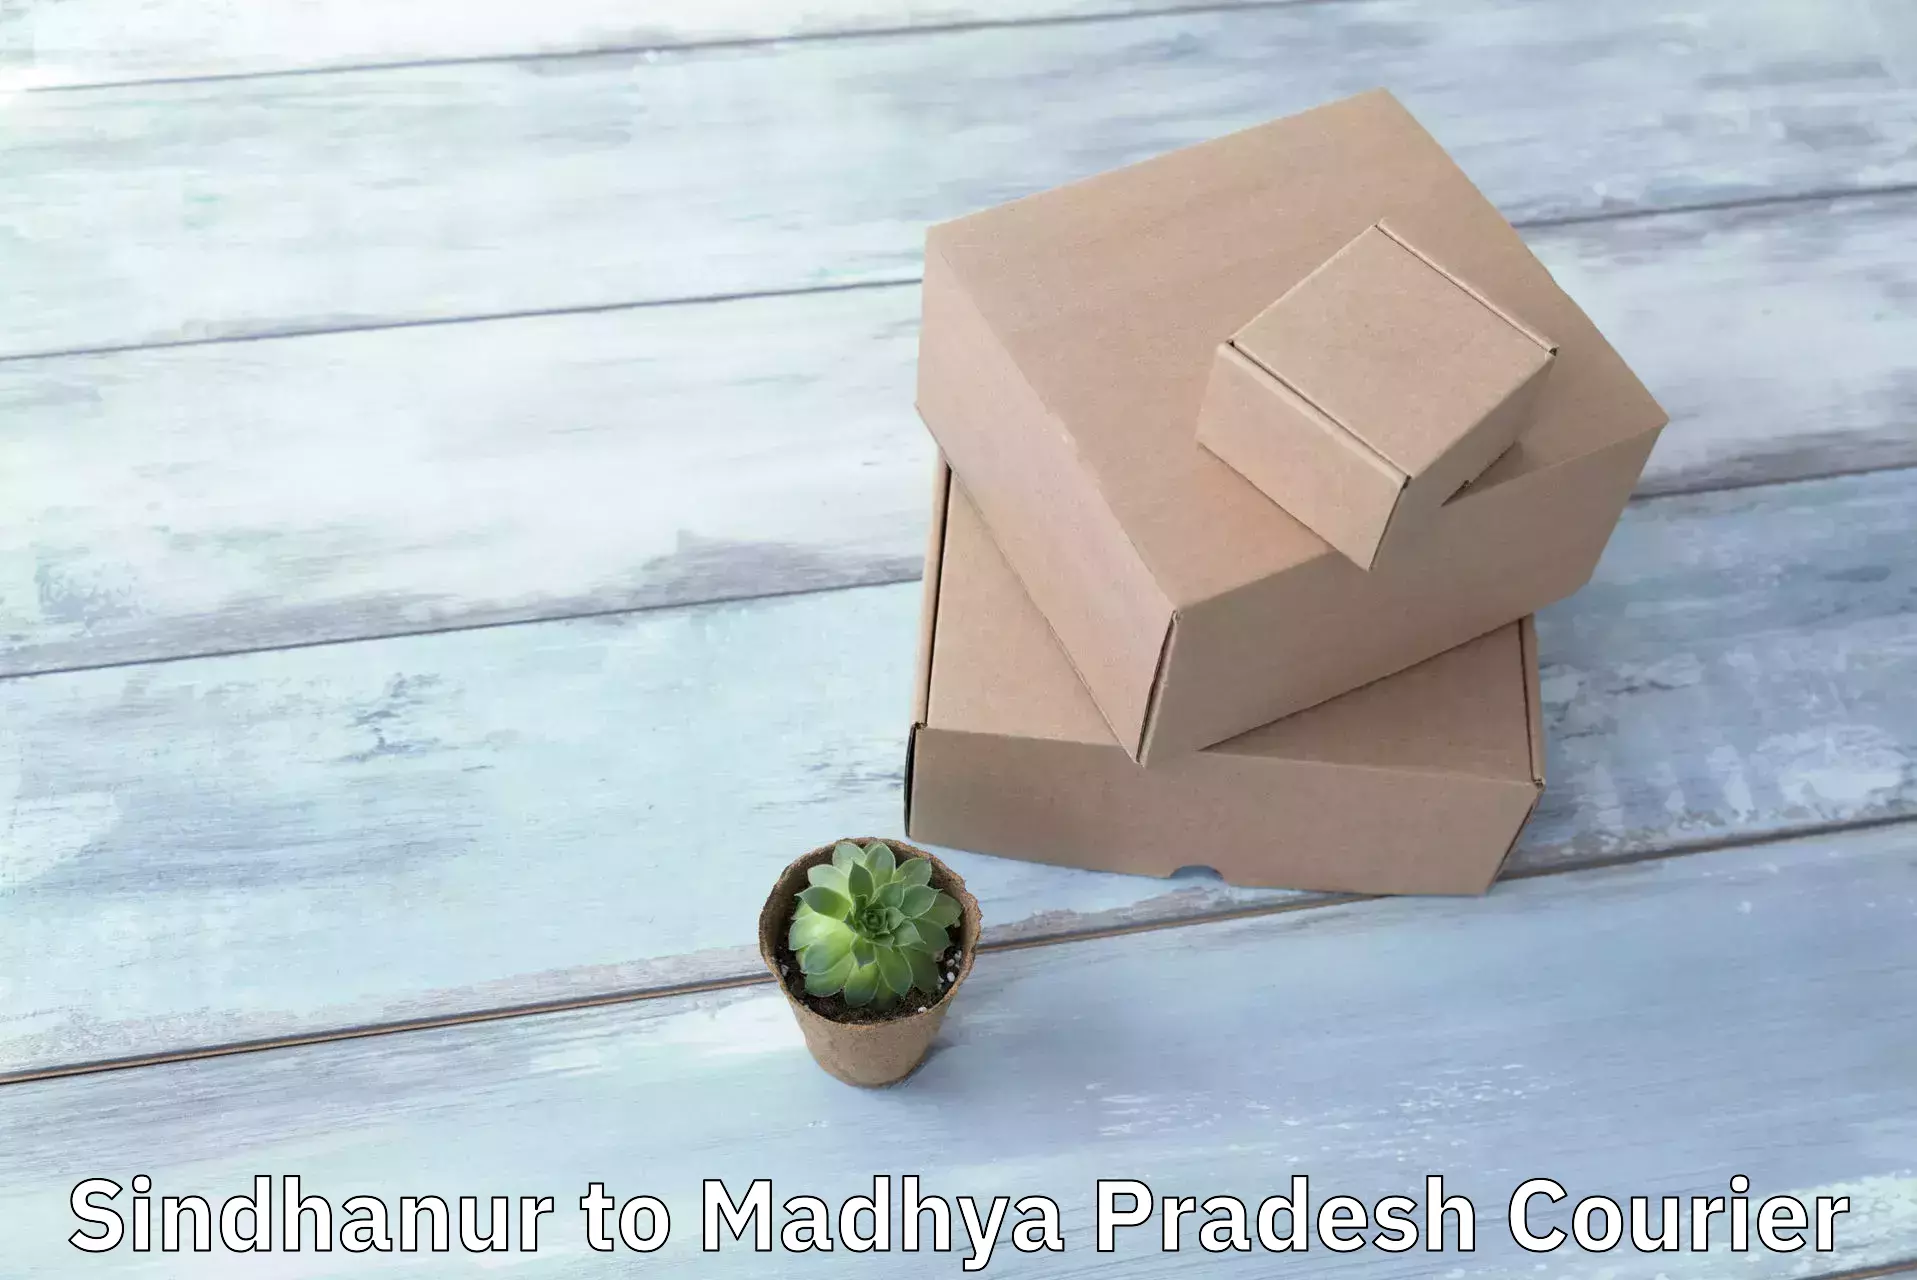 Fragile item shipping Sindhanur to Niwari